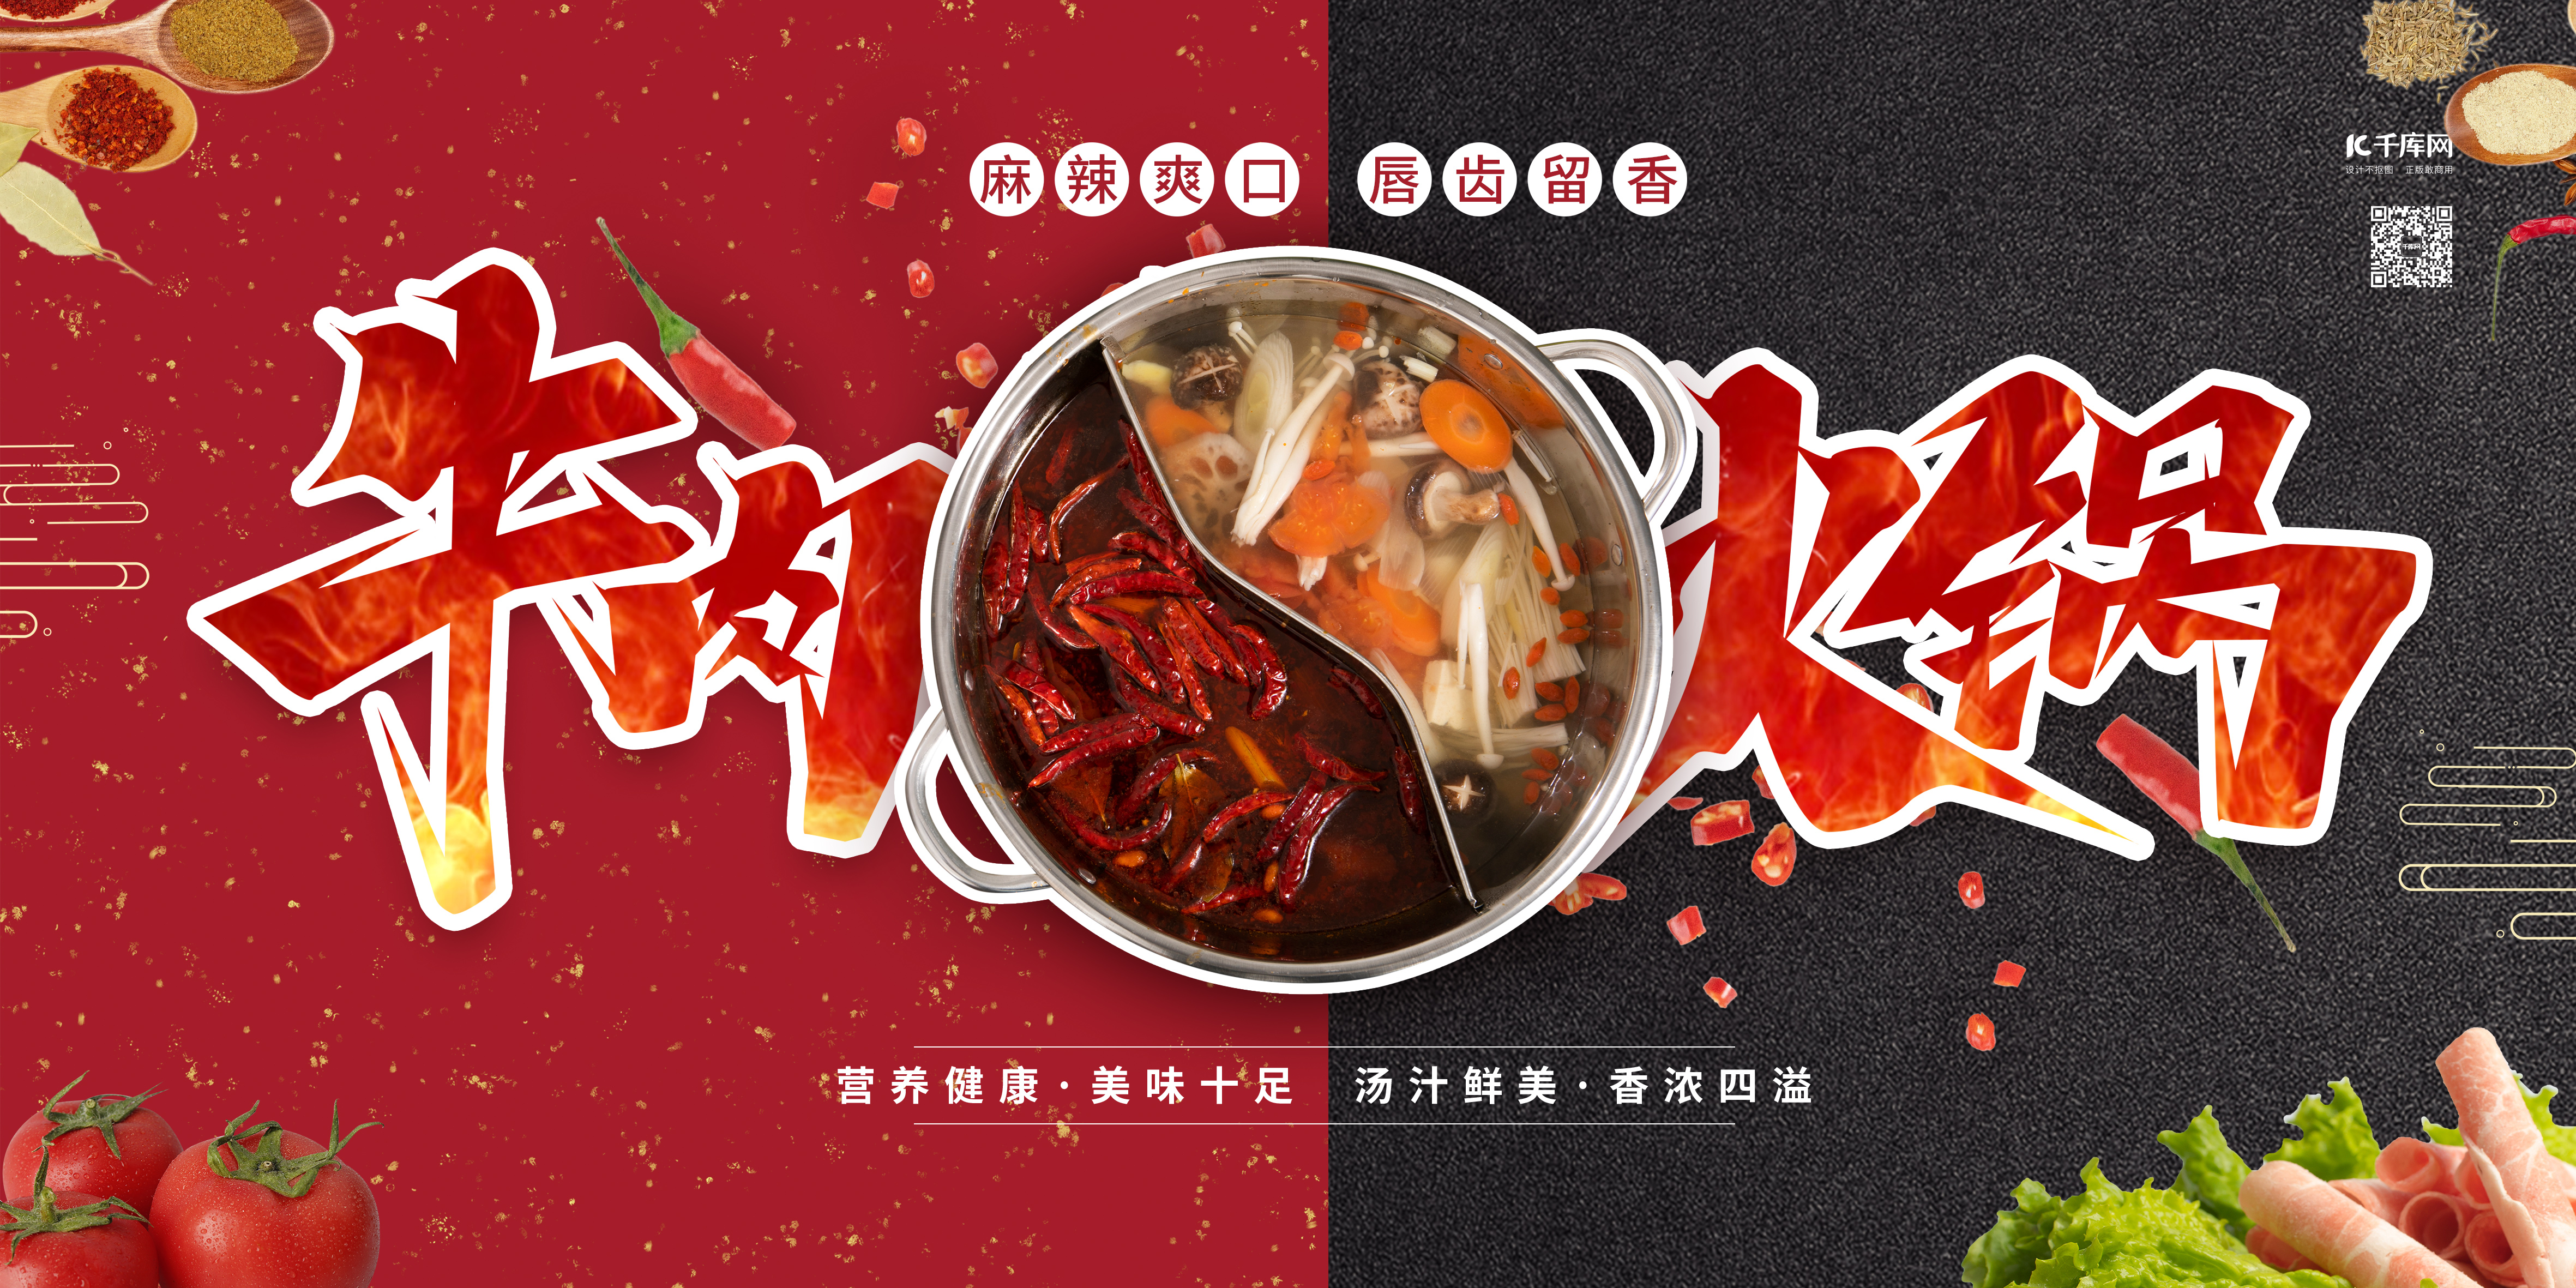 美食火锅红色简约展板图片